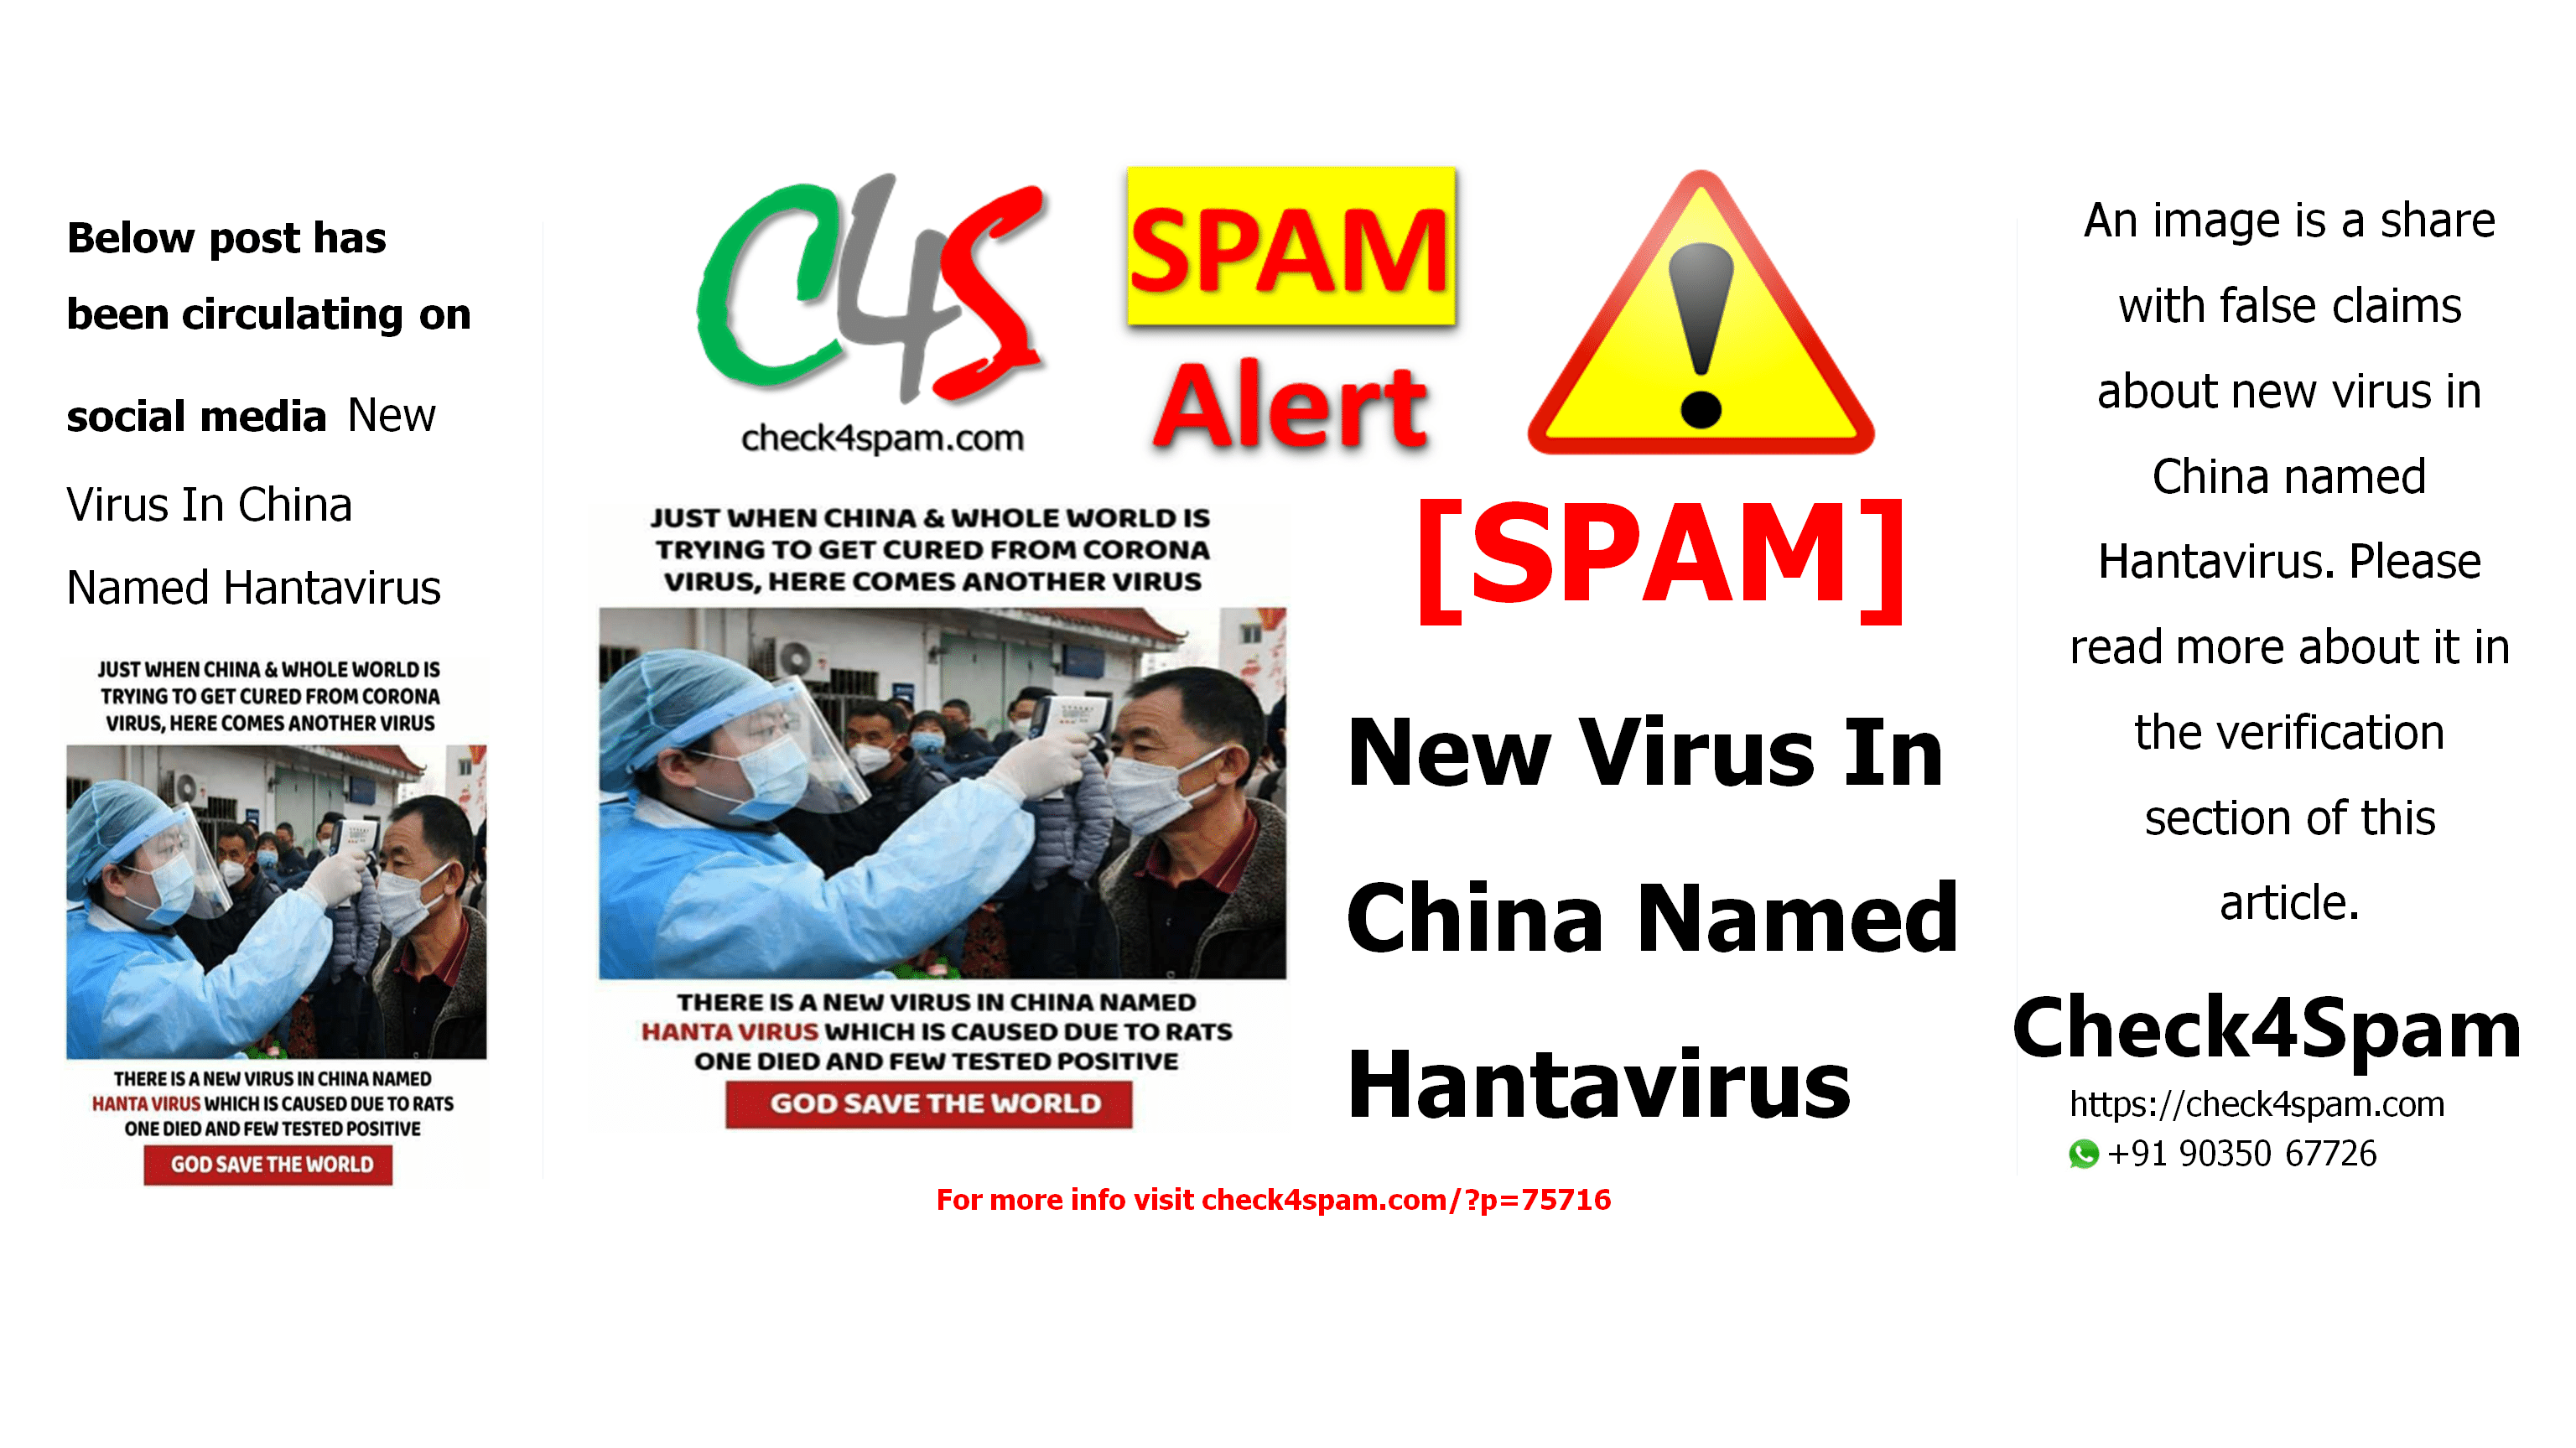 New Virus In China Named Hantavirus